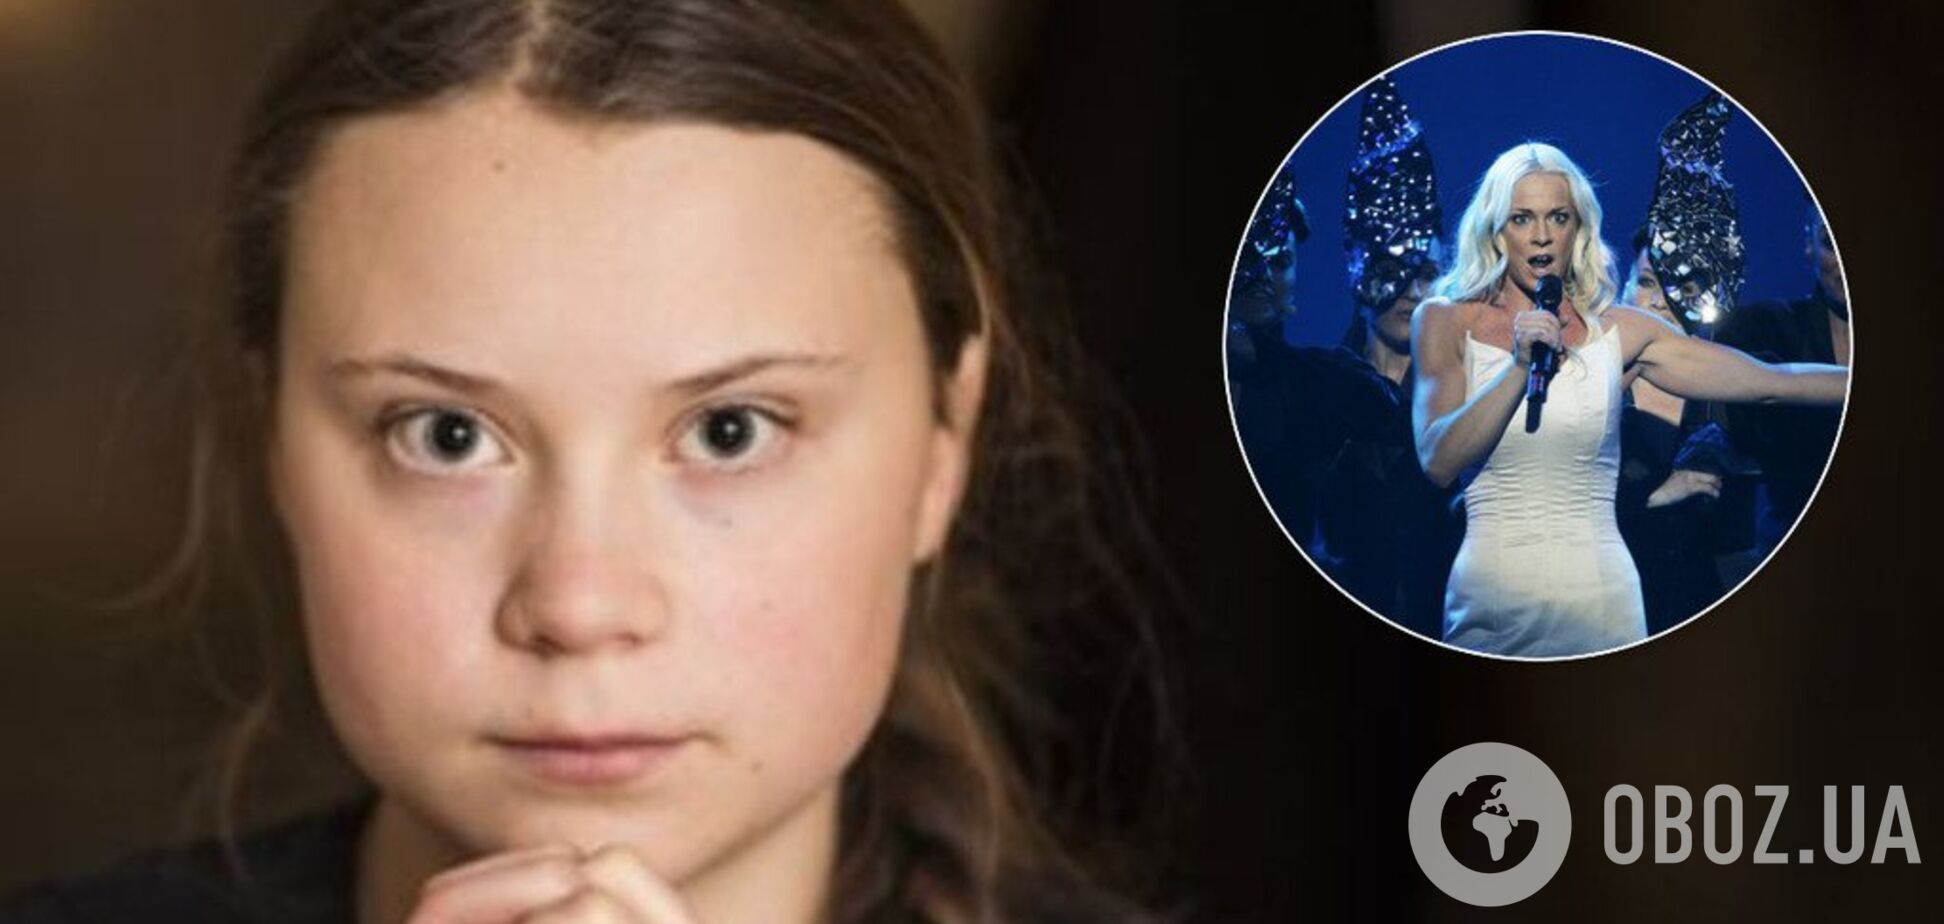 Юная экоактивистка из Швеции оказалась дочерью звезды Евровидения